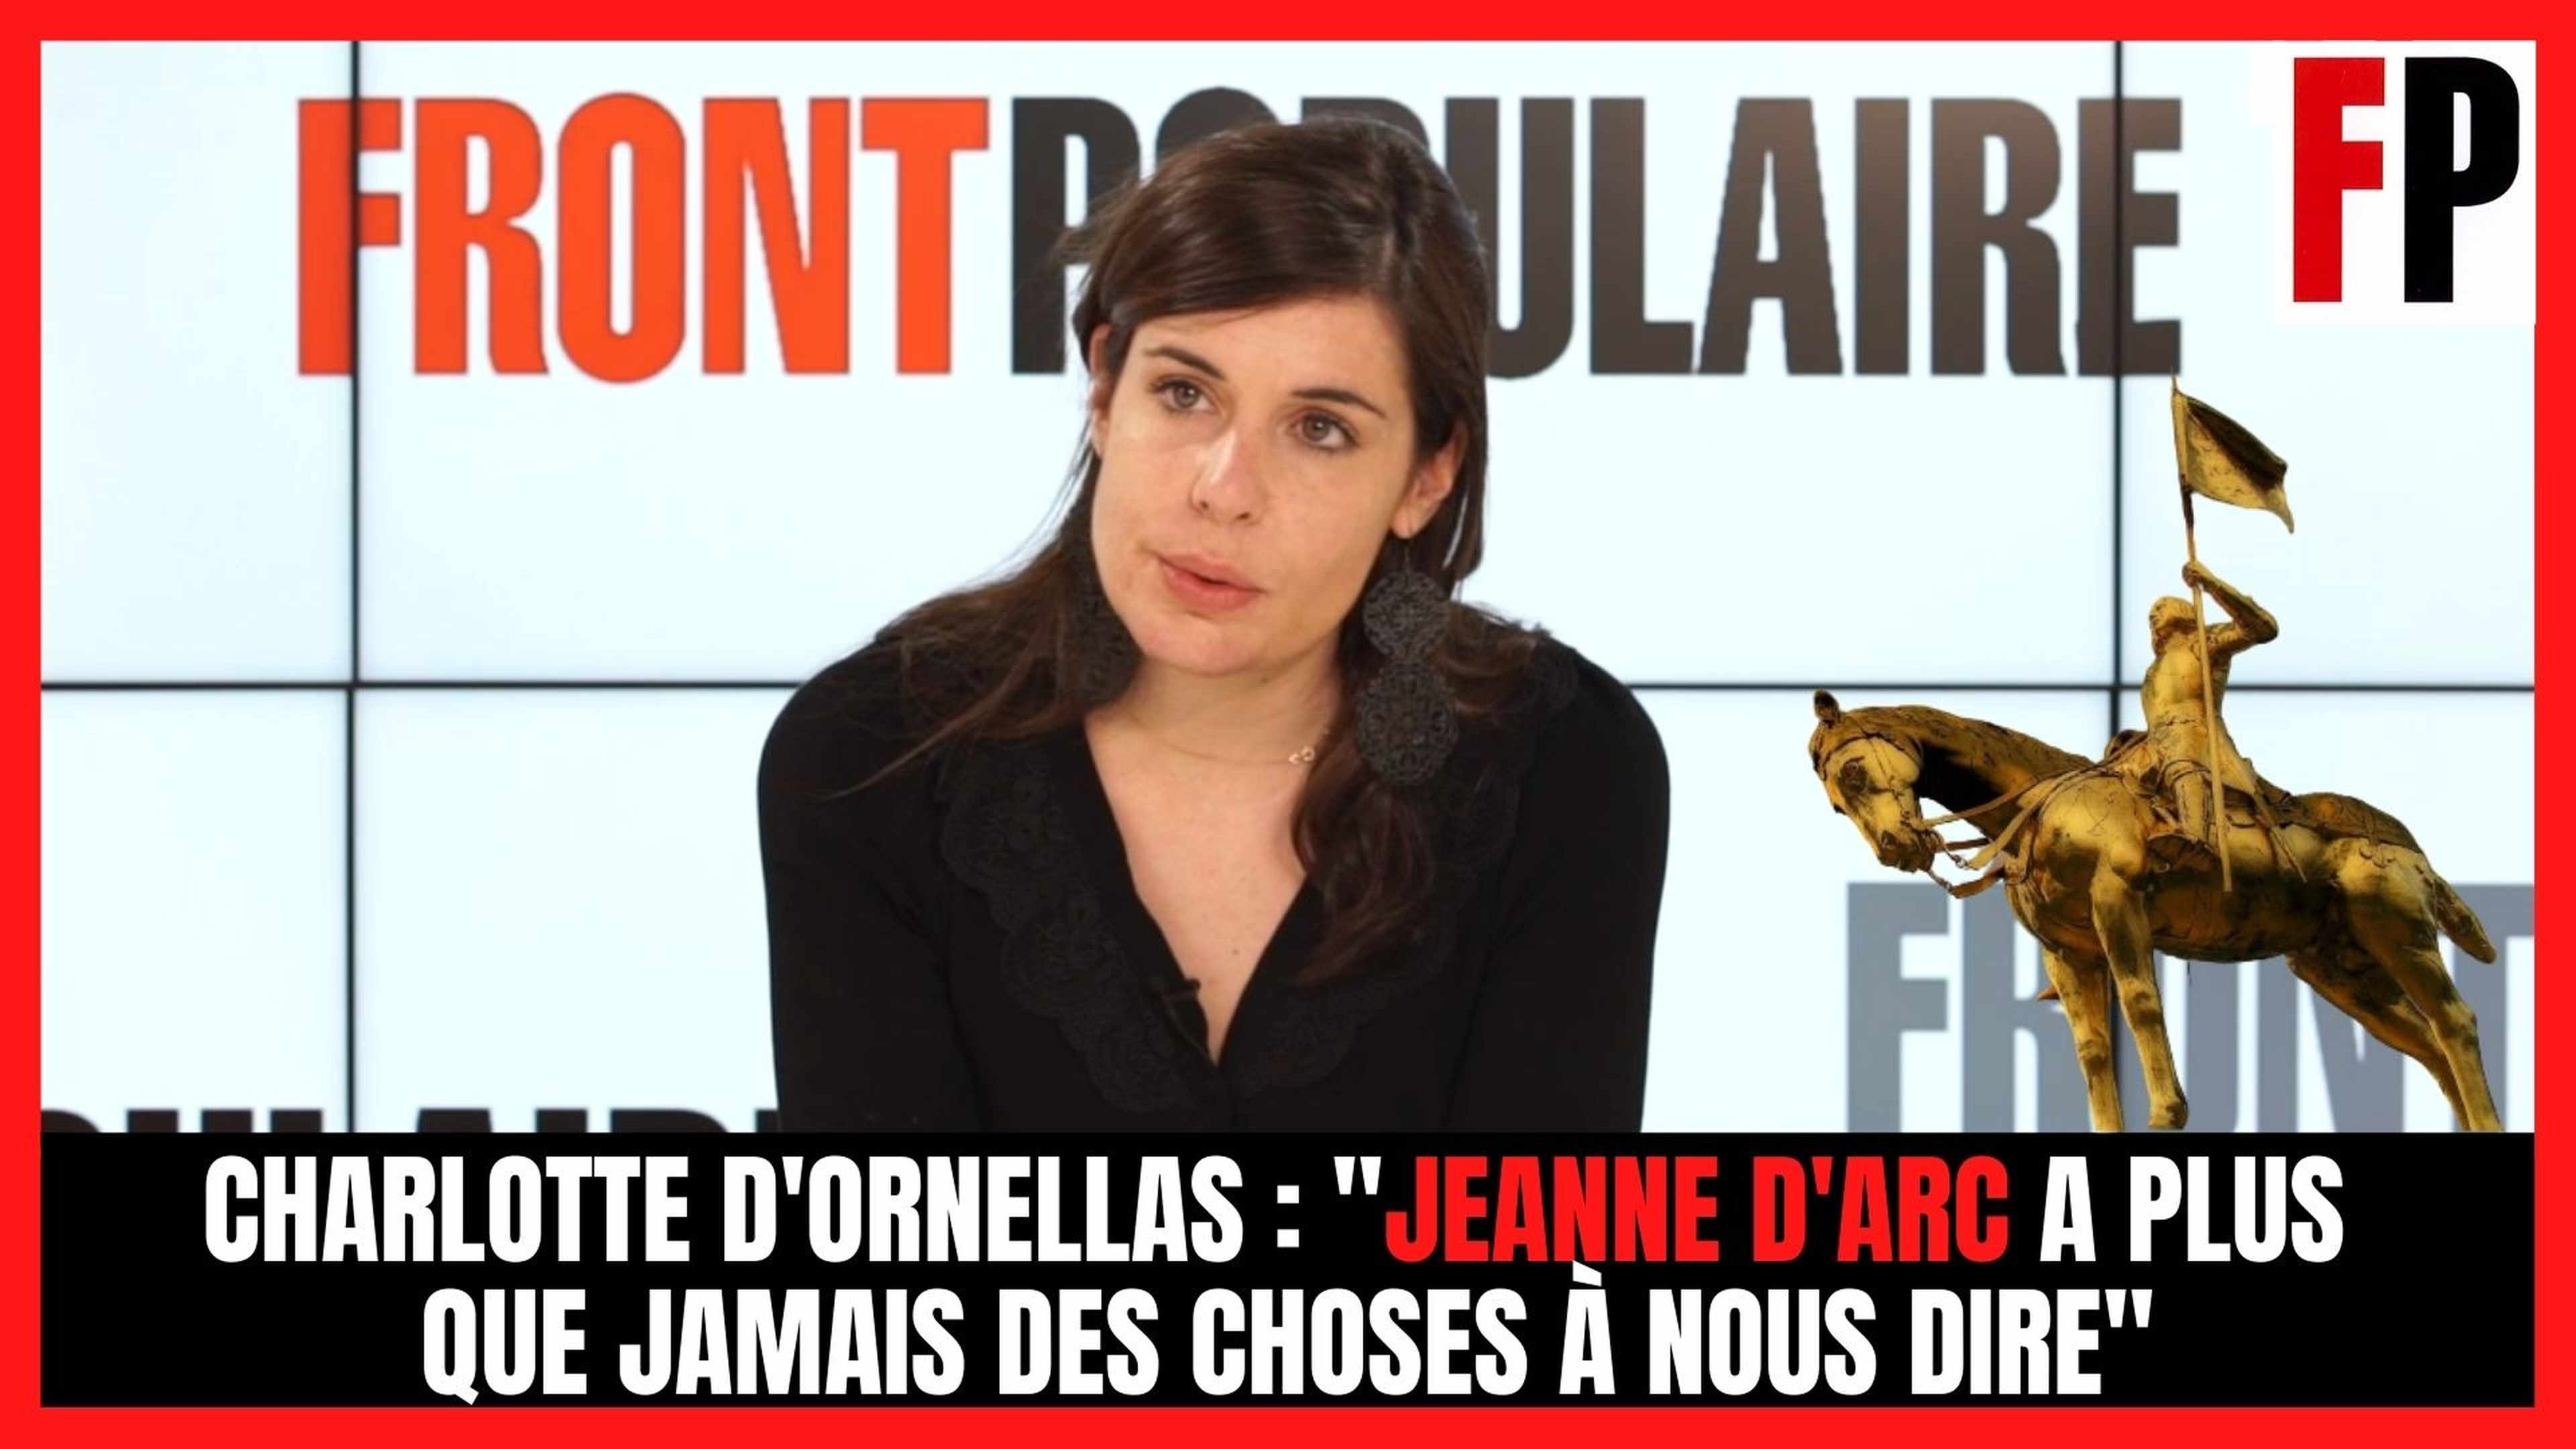 Charlotte d'Ornellas : "Jeanne d'Arc a plus que jamais des choses à nous dire"